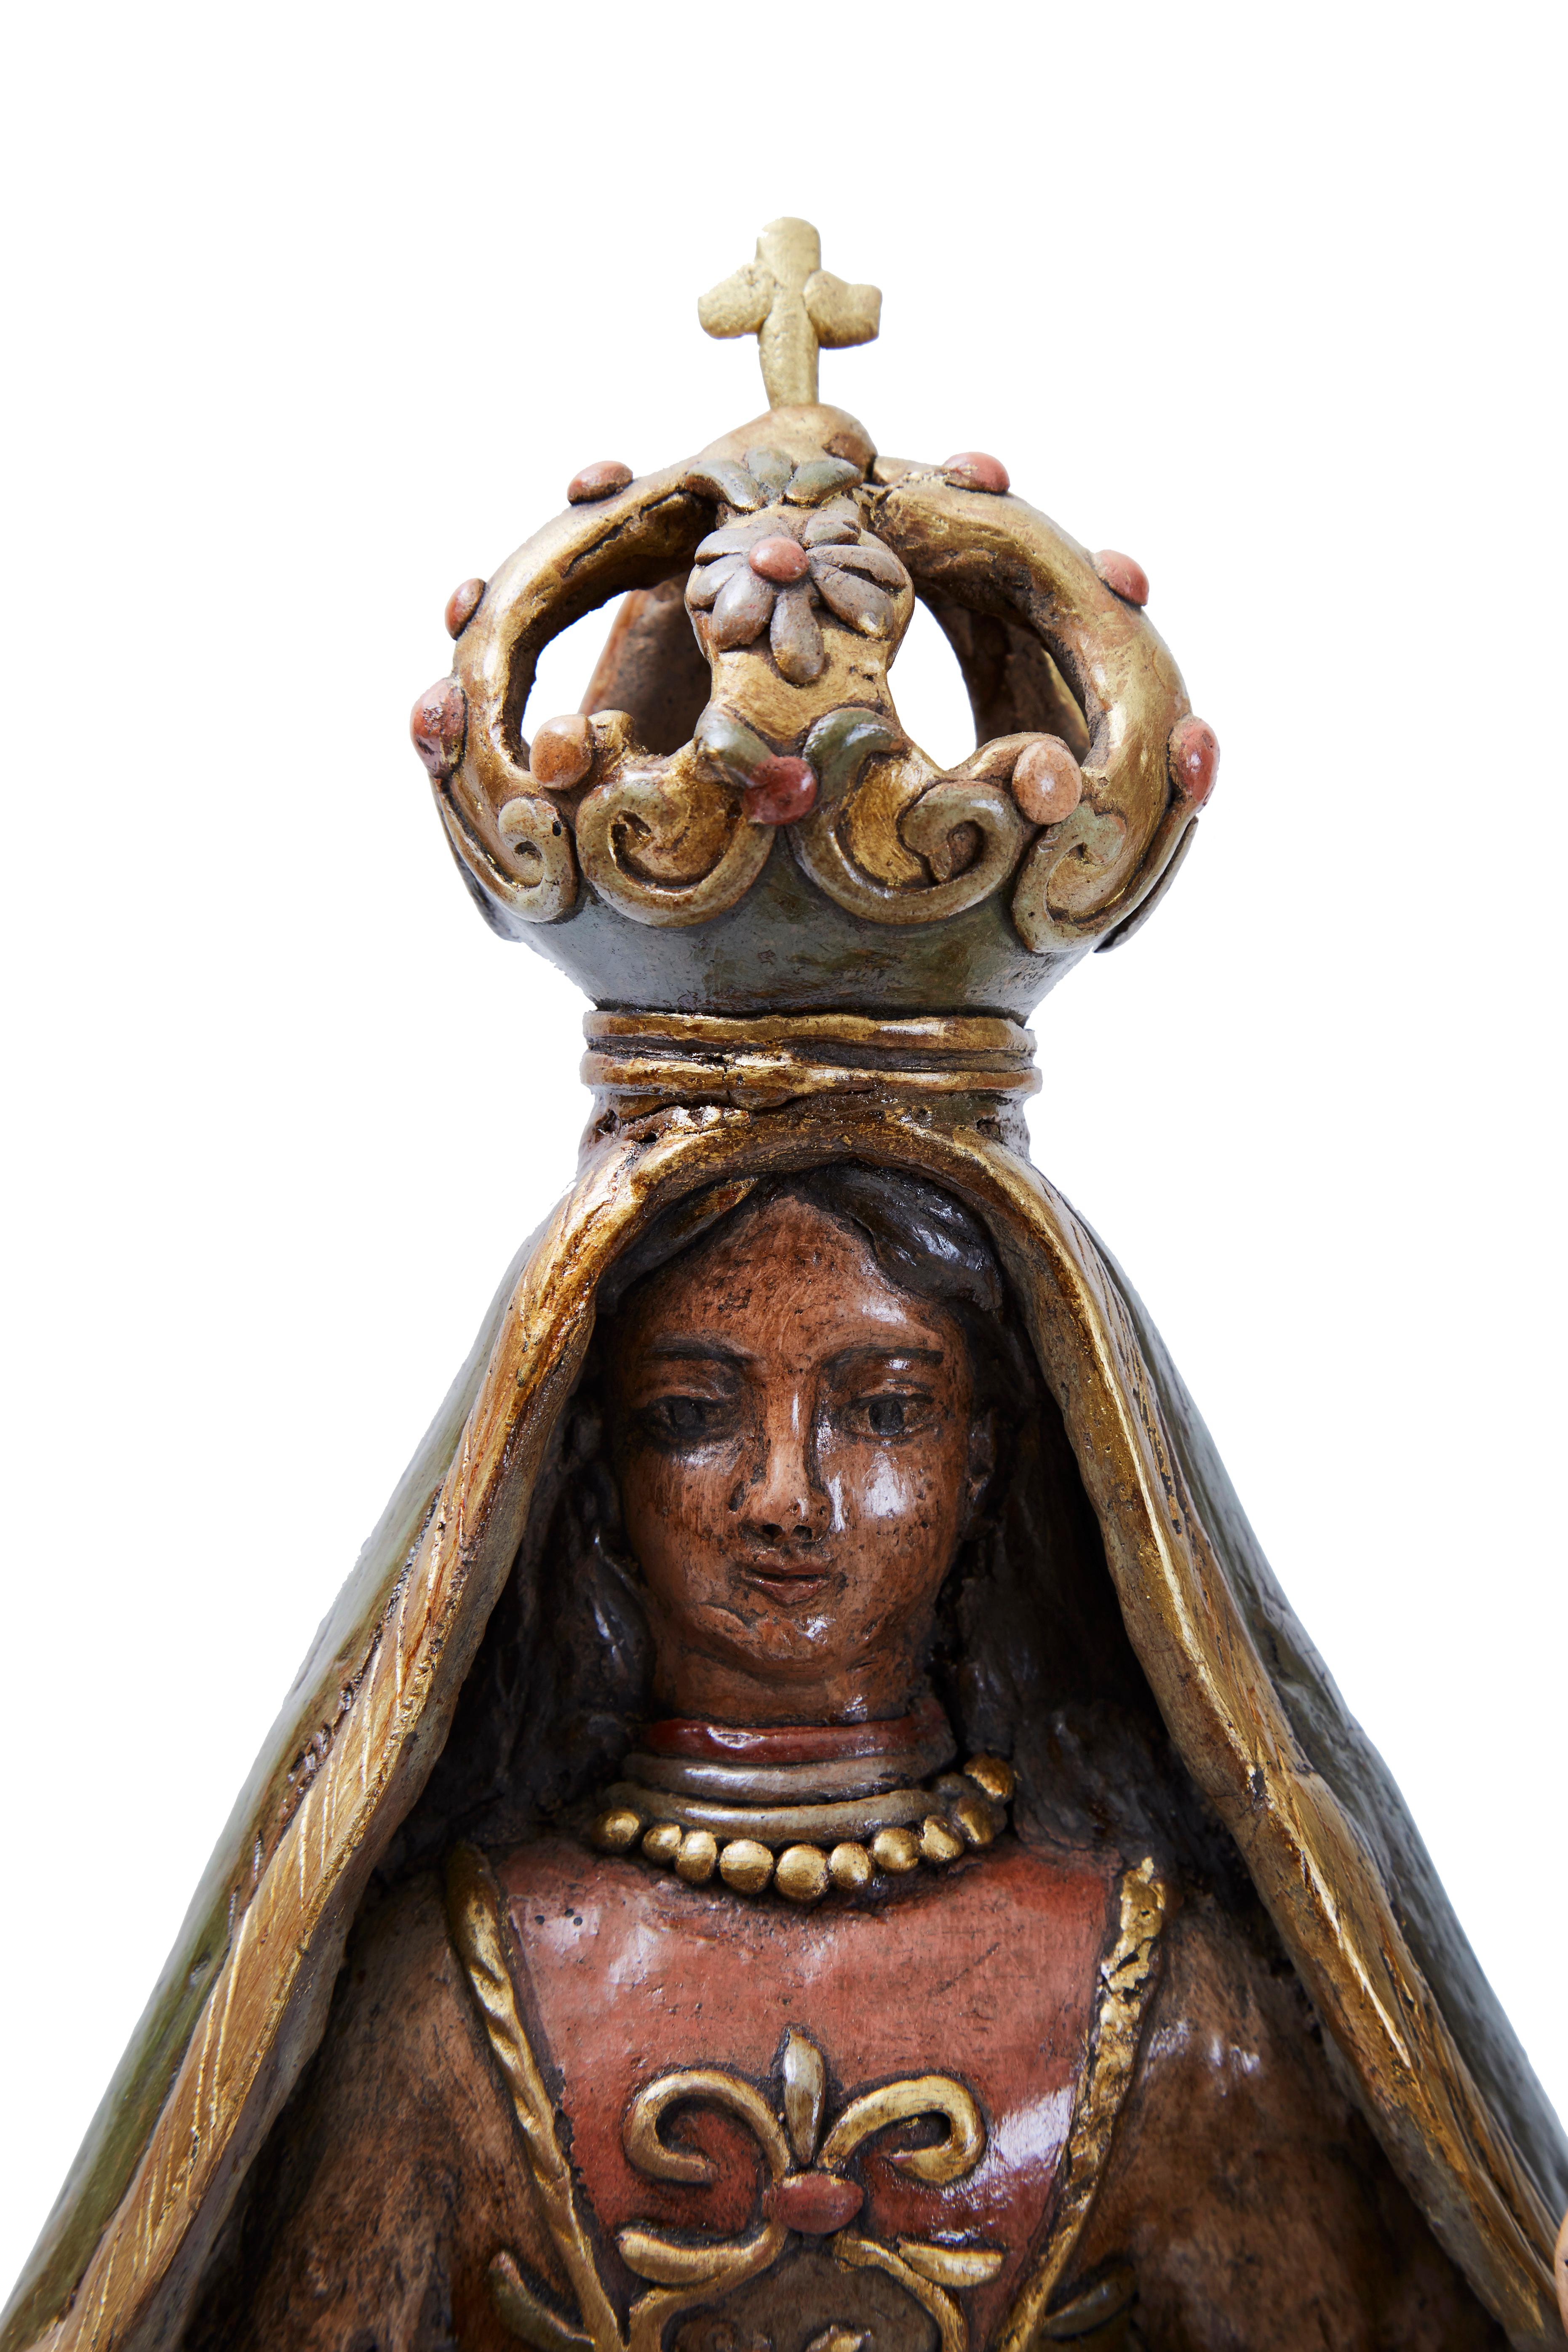 La Virgen del Carmen, Pottery & Ceramics, Mexican Folk Art, Cactus Fine Art - Sculpture by Martin Ibarra Morales